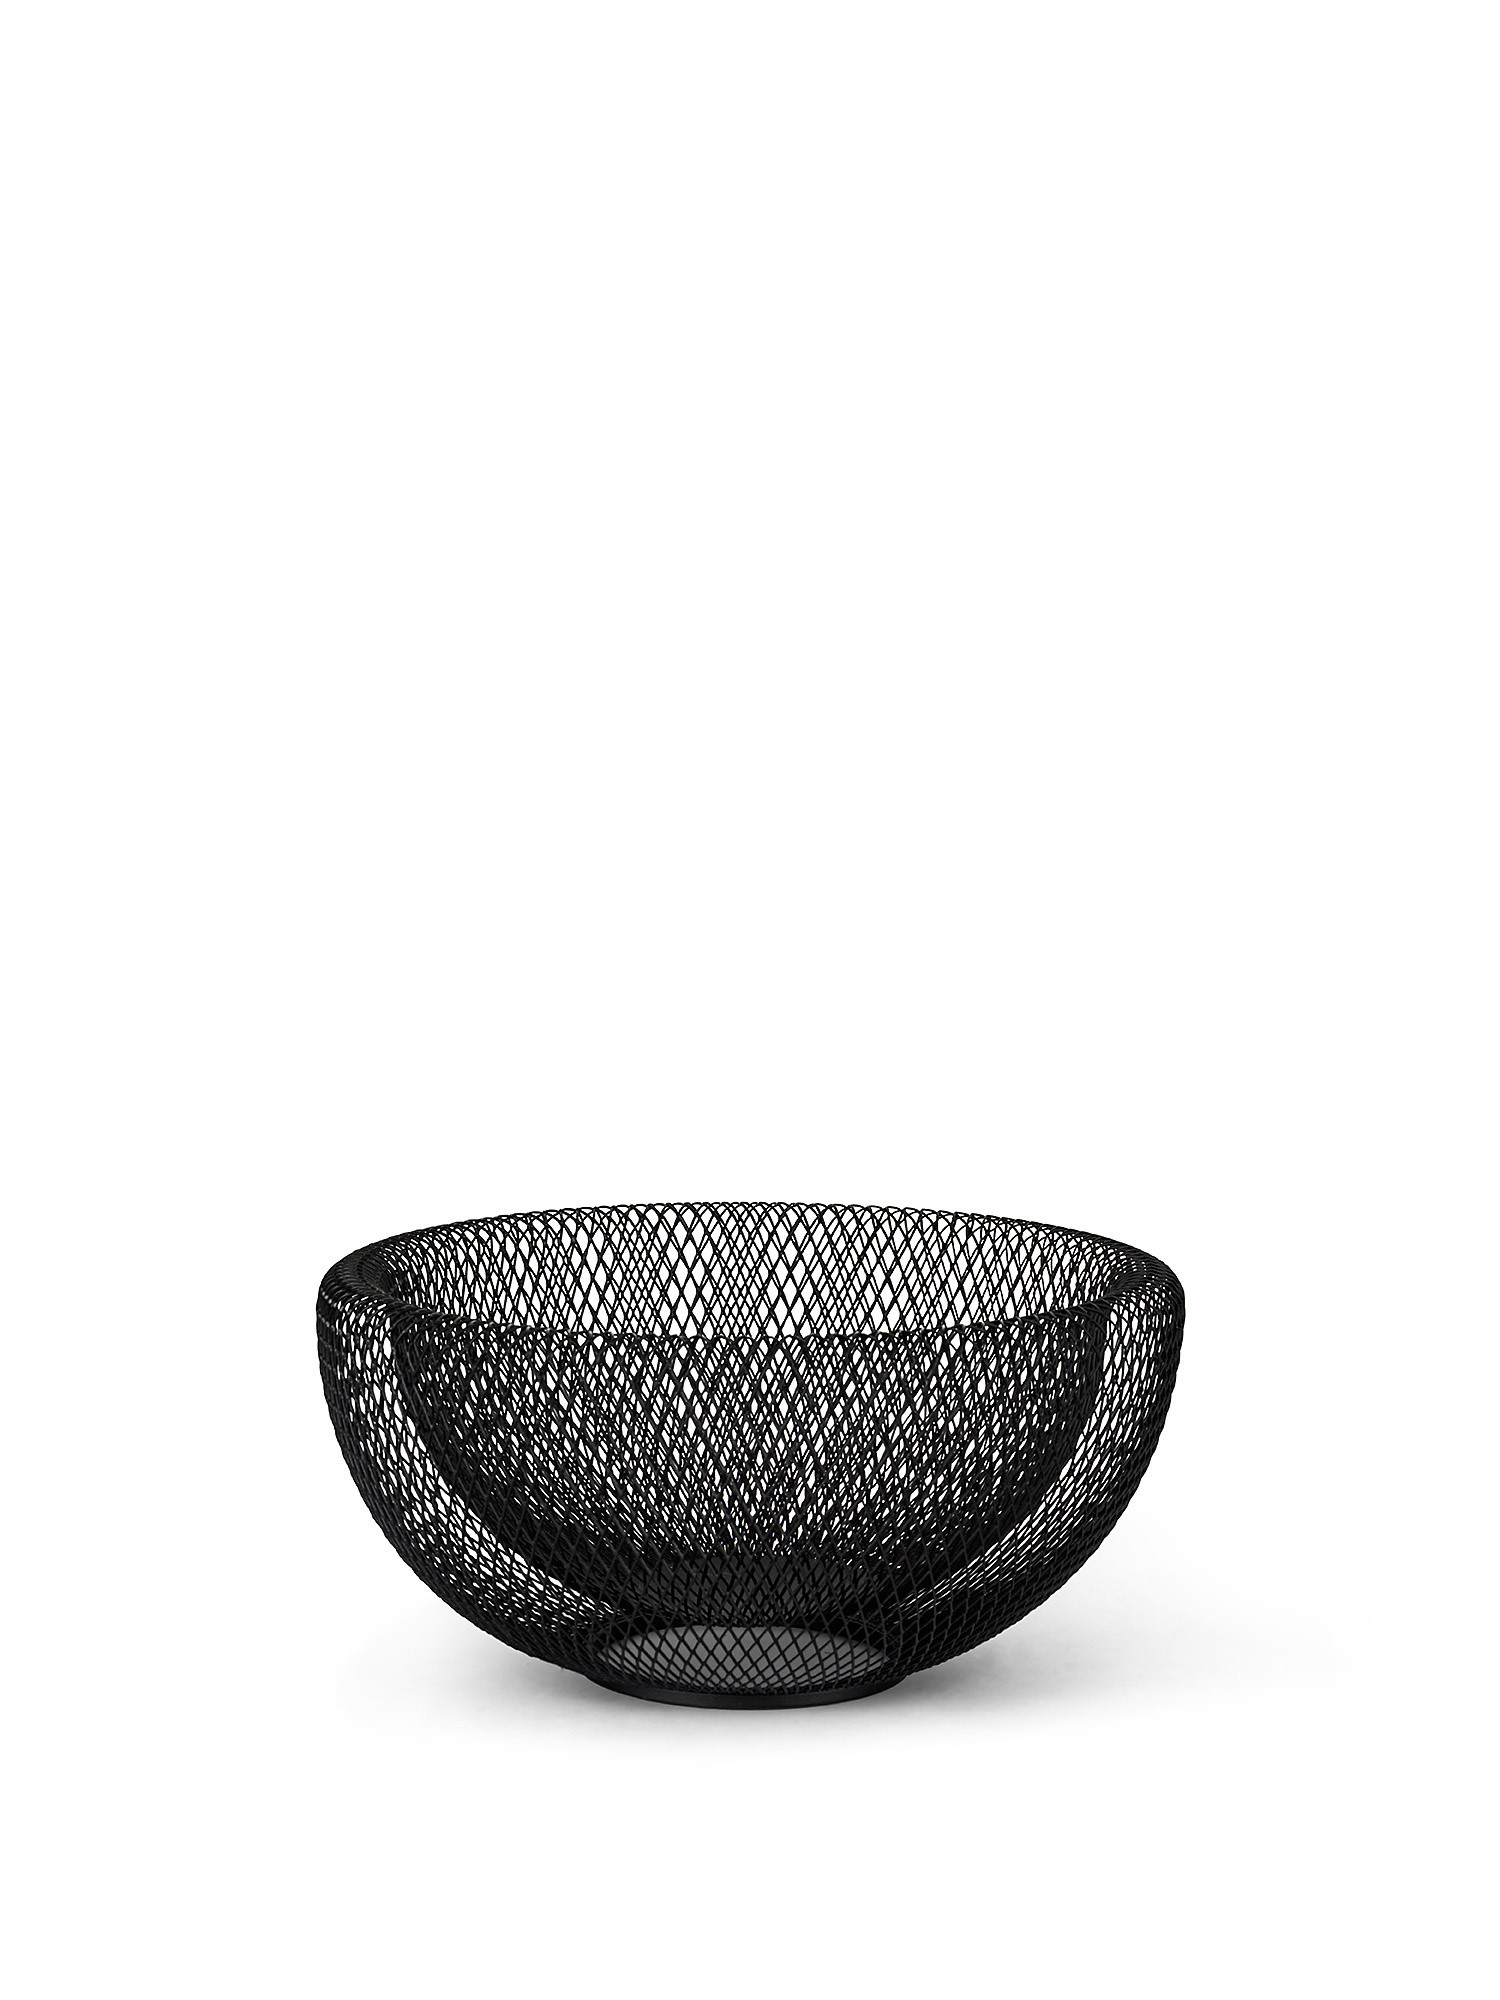 Fruit basket in enamelled iron, Black, large image number 0